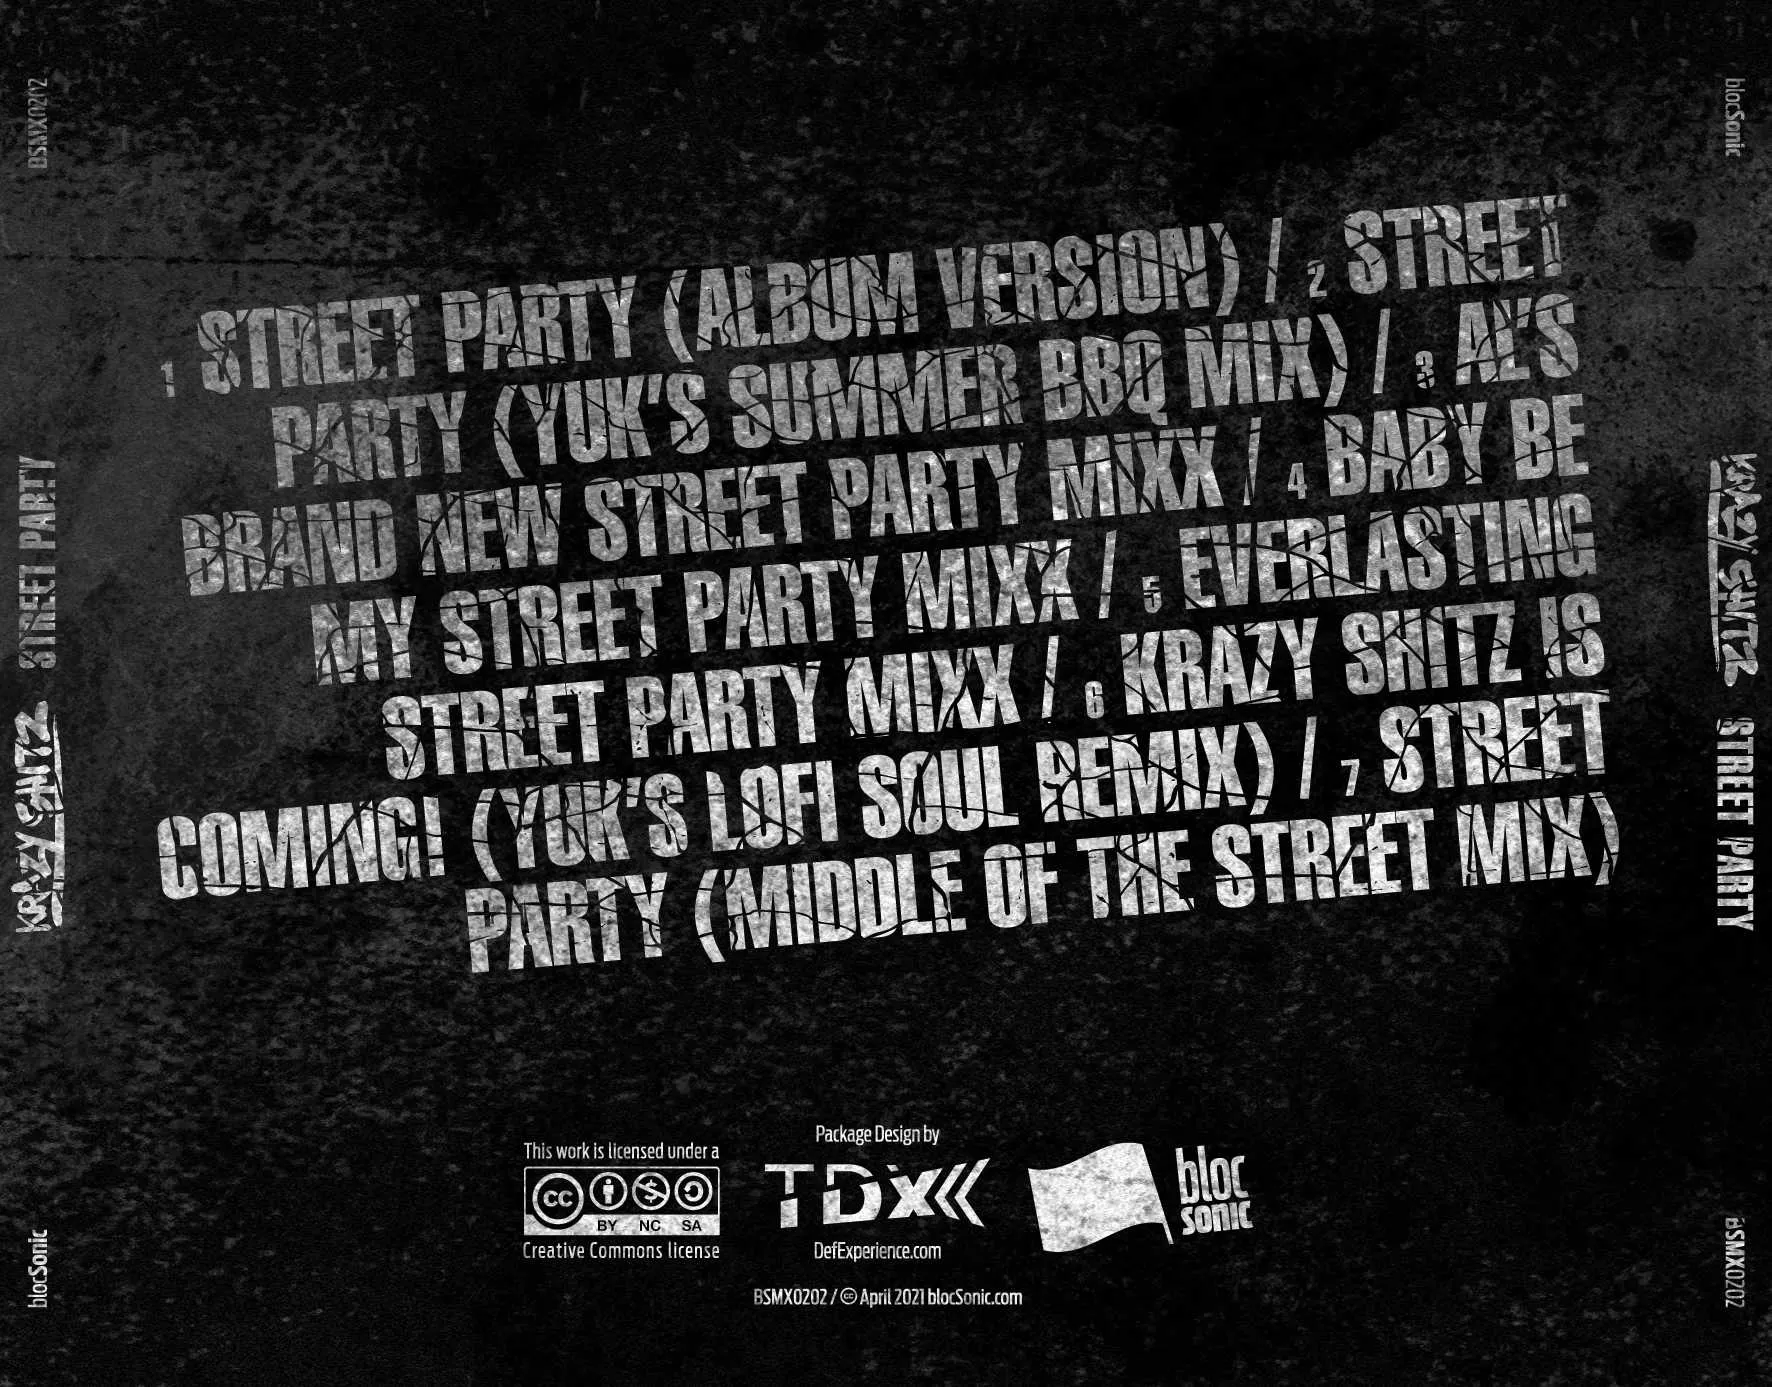 Album traycard for “Street Party” by Krazy Shitz